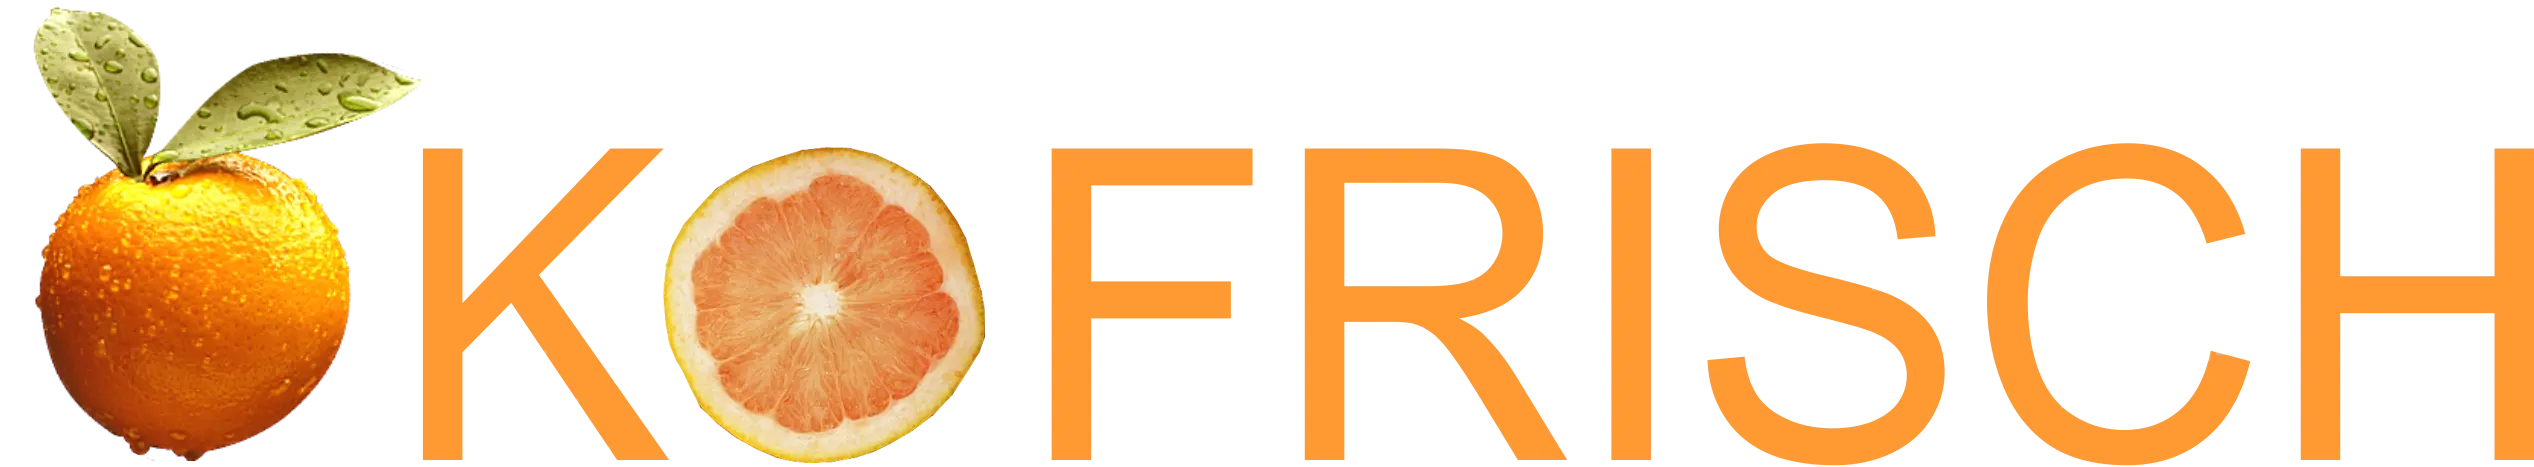 OKOFRISCH-logo